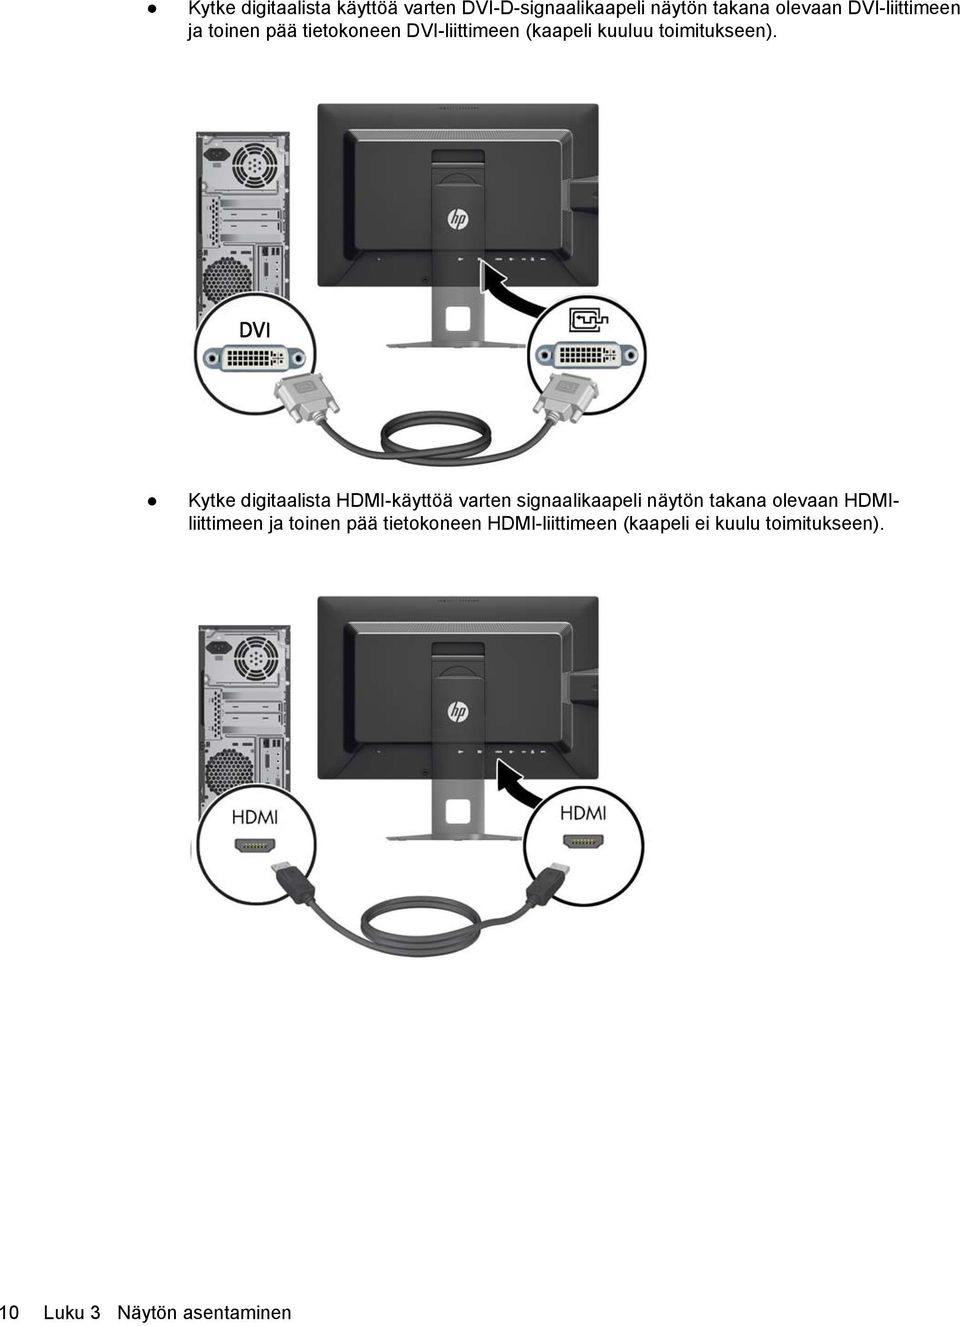 Kytke digitaalista HDMI-käyttöä varten signaalikaapeli näytön takana olevaan